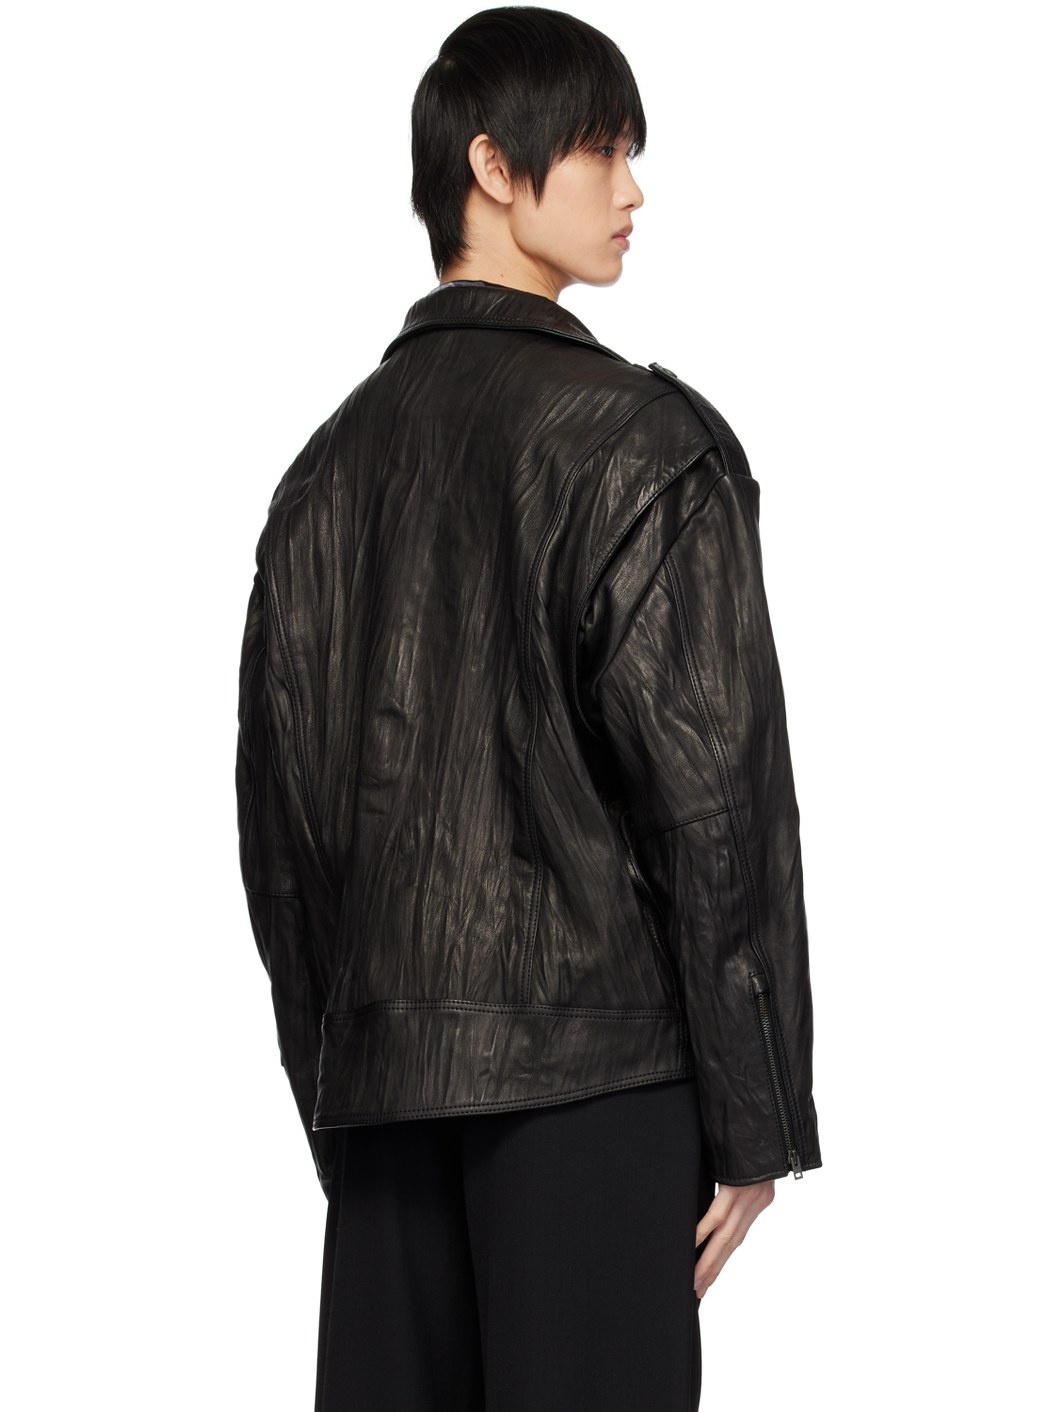 Black Crinkled Leather Jacket - 3